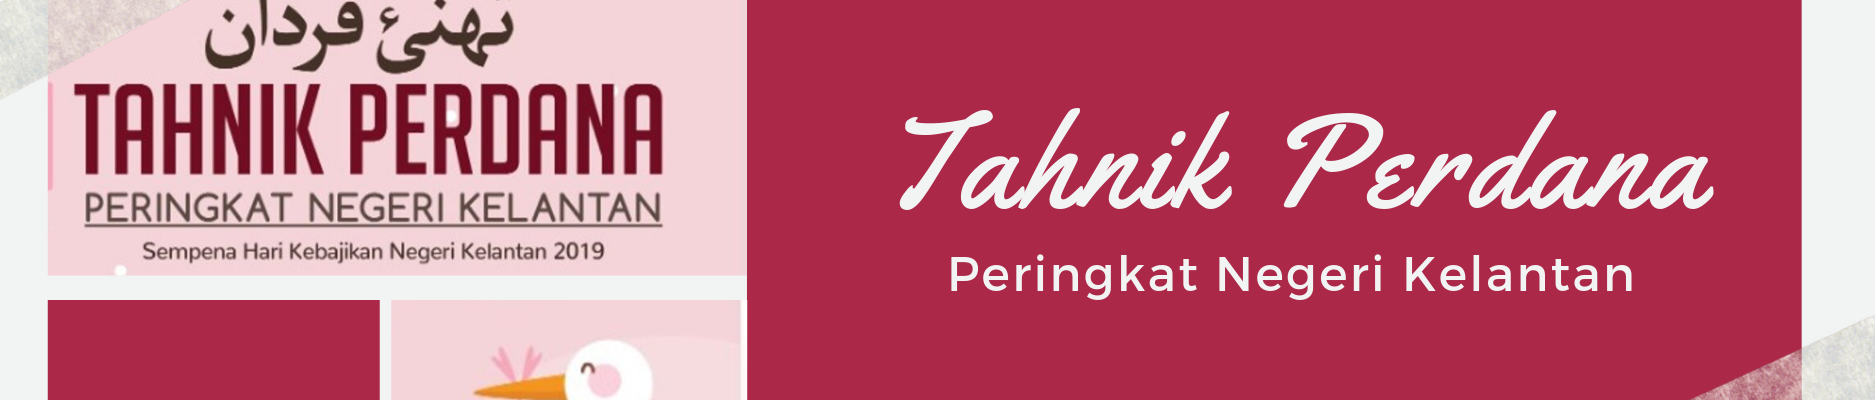 Tahnik Perdana 2019 Peringkat Negeri Kelantan